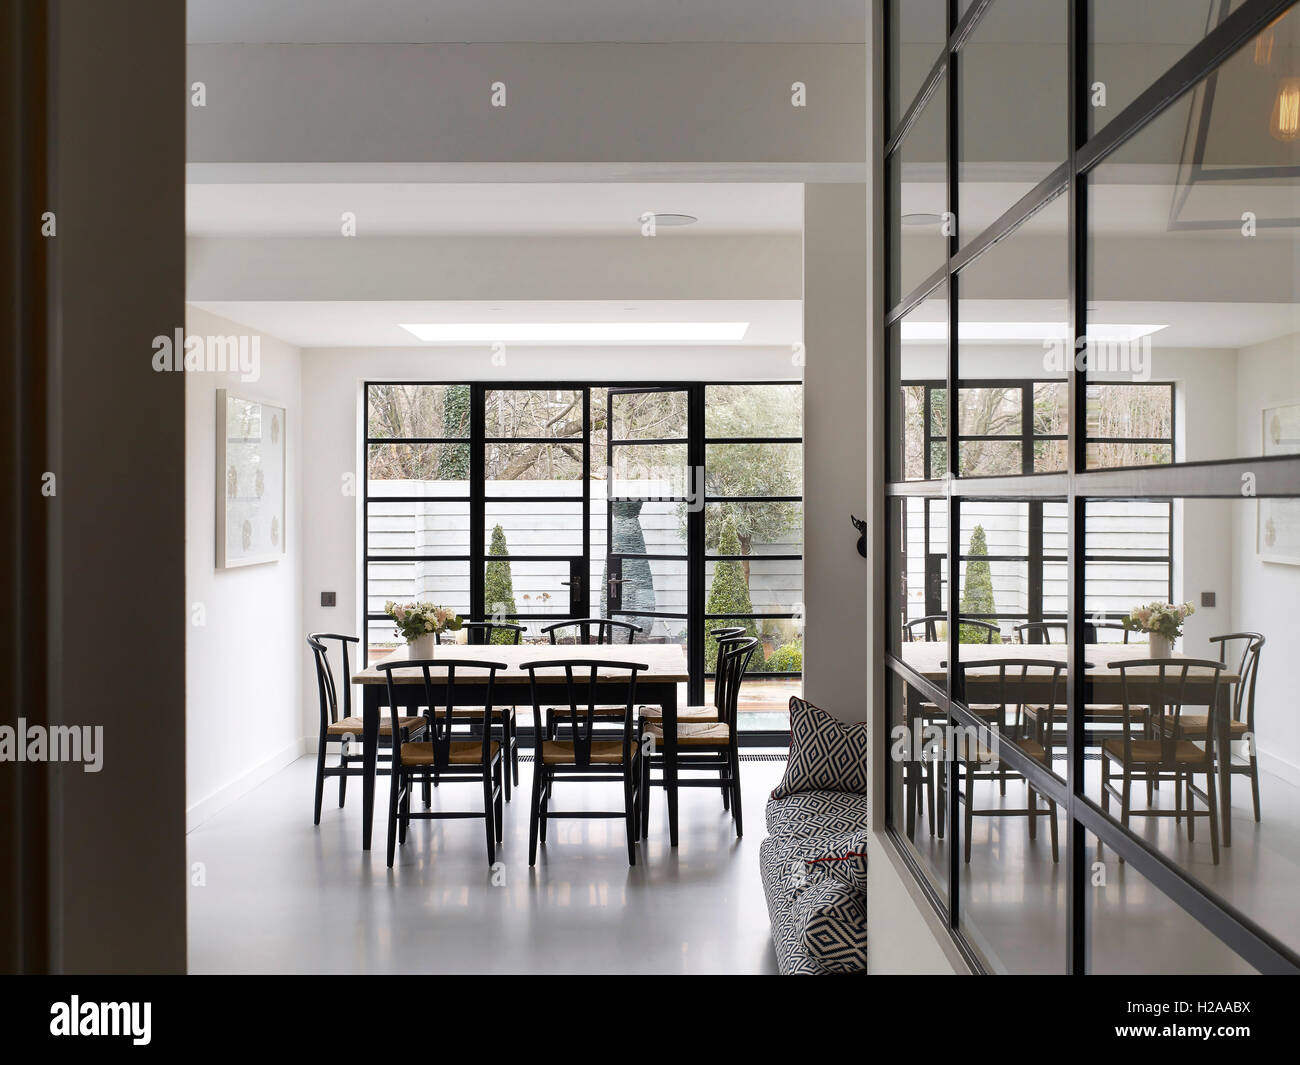 Blick entlang Crittal Fenster in Richtung Küche und Garten. North Kensington Haus, London, Vereinigtes Königreich. Architekt: Steif + Trevillion Architekten, 2015. Stockfoto